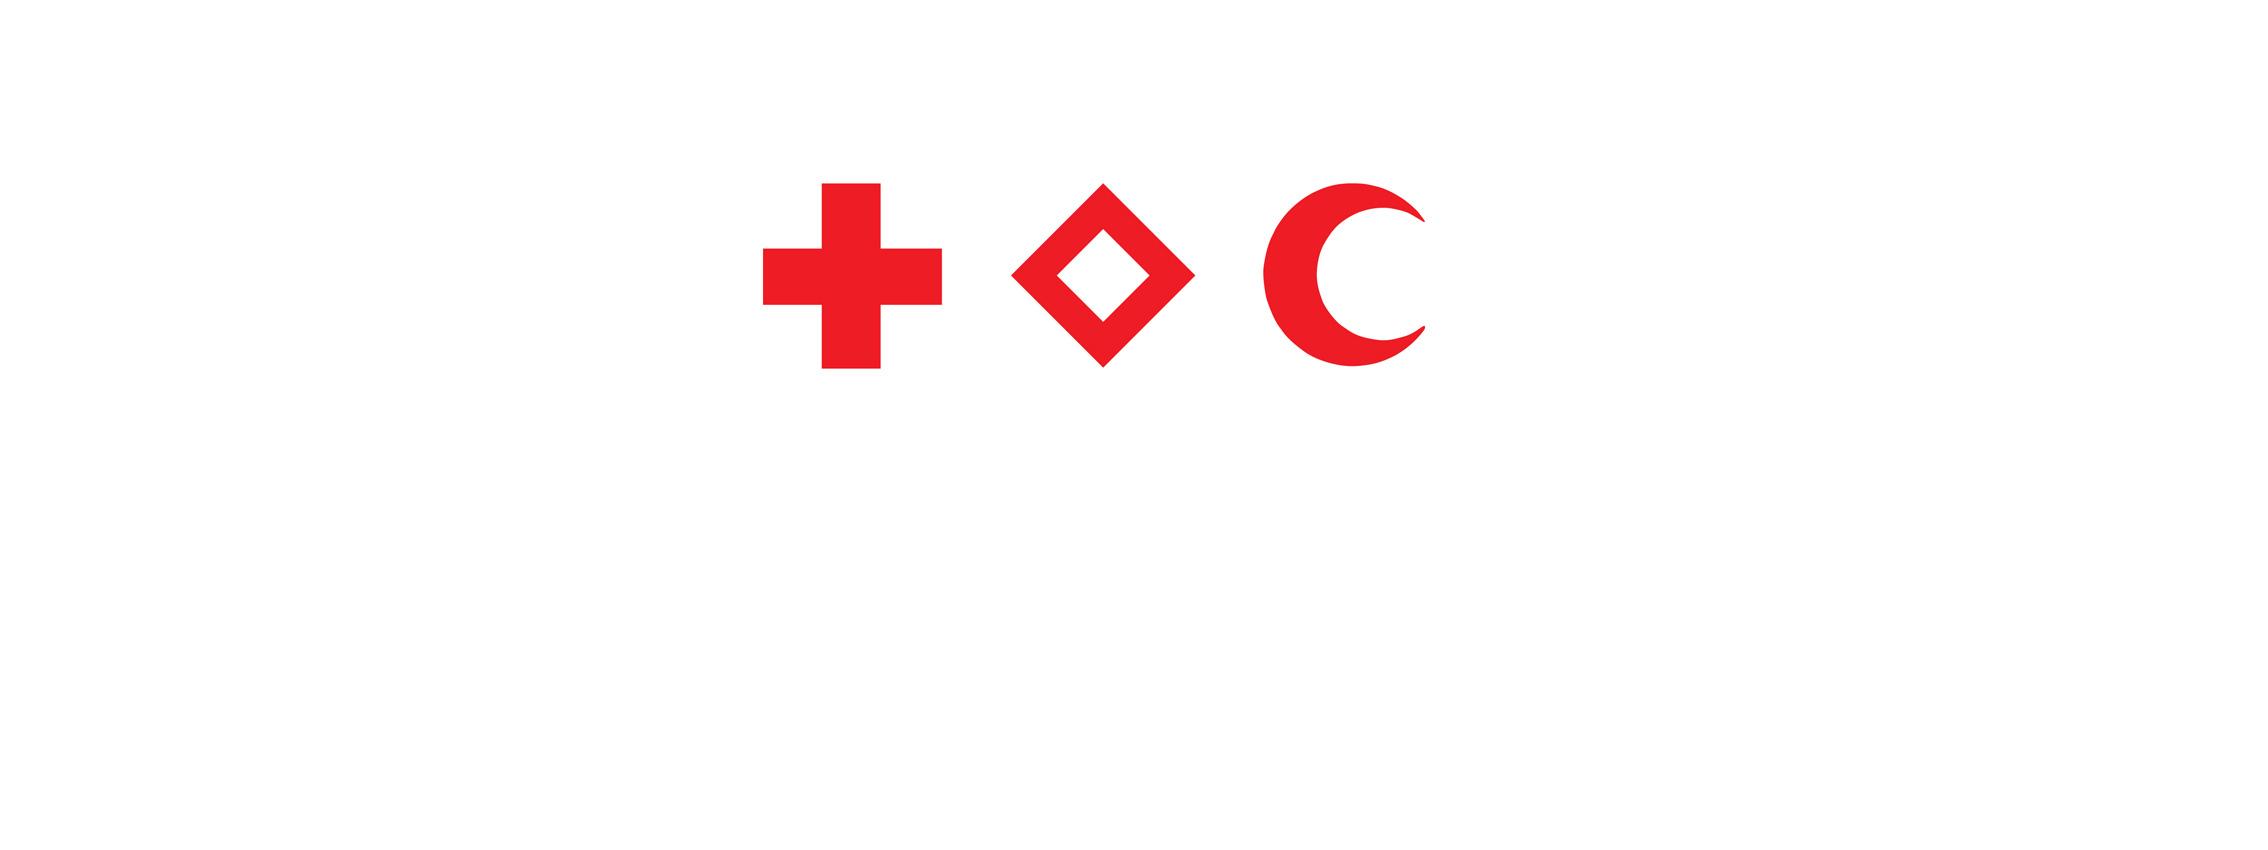 Gli emblemi del Movimento della Croce Rossa e della Mezzaluna Rossa: la Croce Rossa, il Cristallo Rosso e la Mezzaluna Rossa.